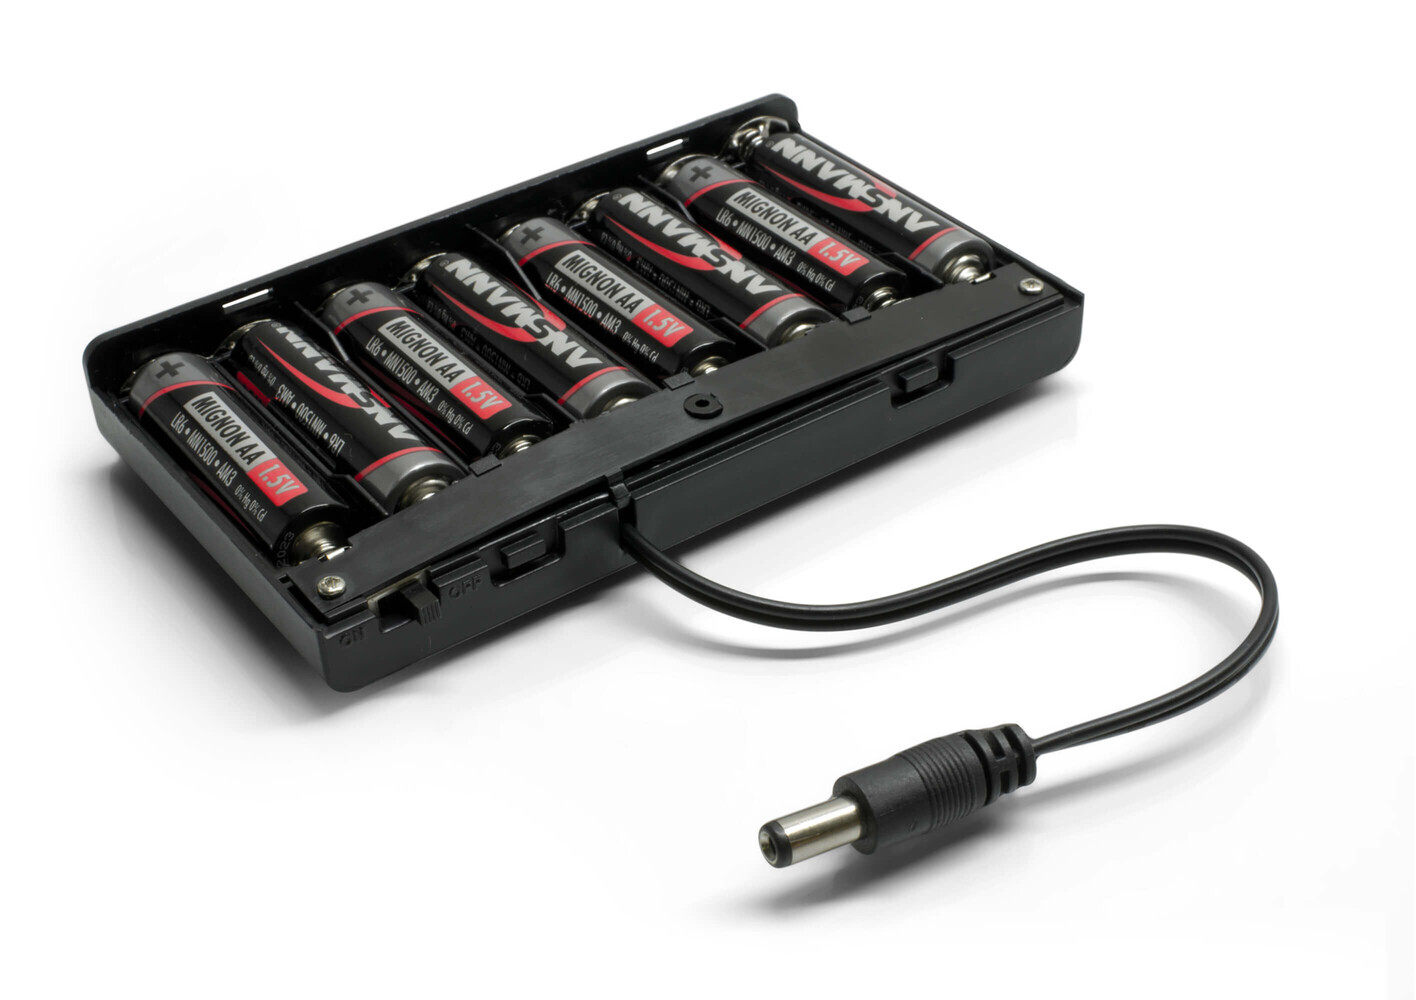 LED Universum Batteriebox für mobile LED Anwendungen von NA - hochwertig und leistungsstark